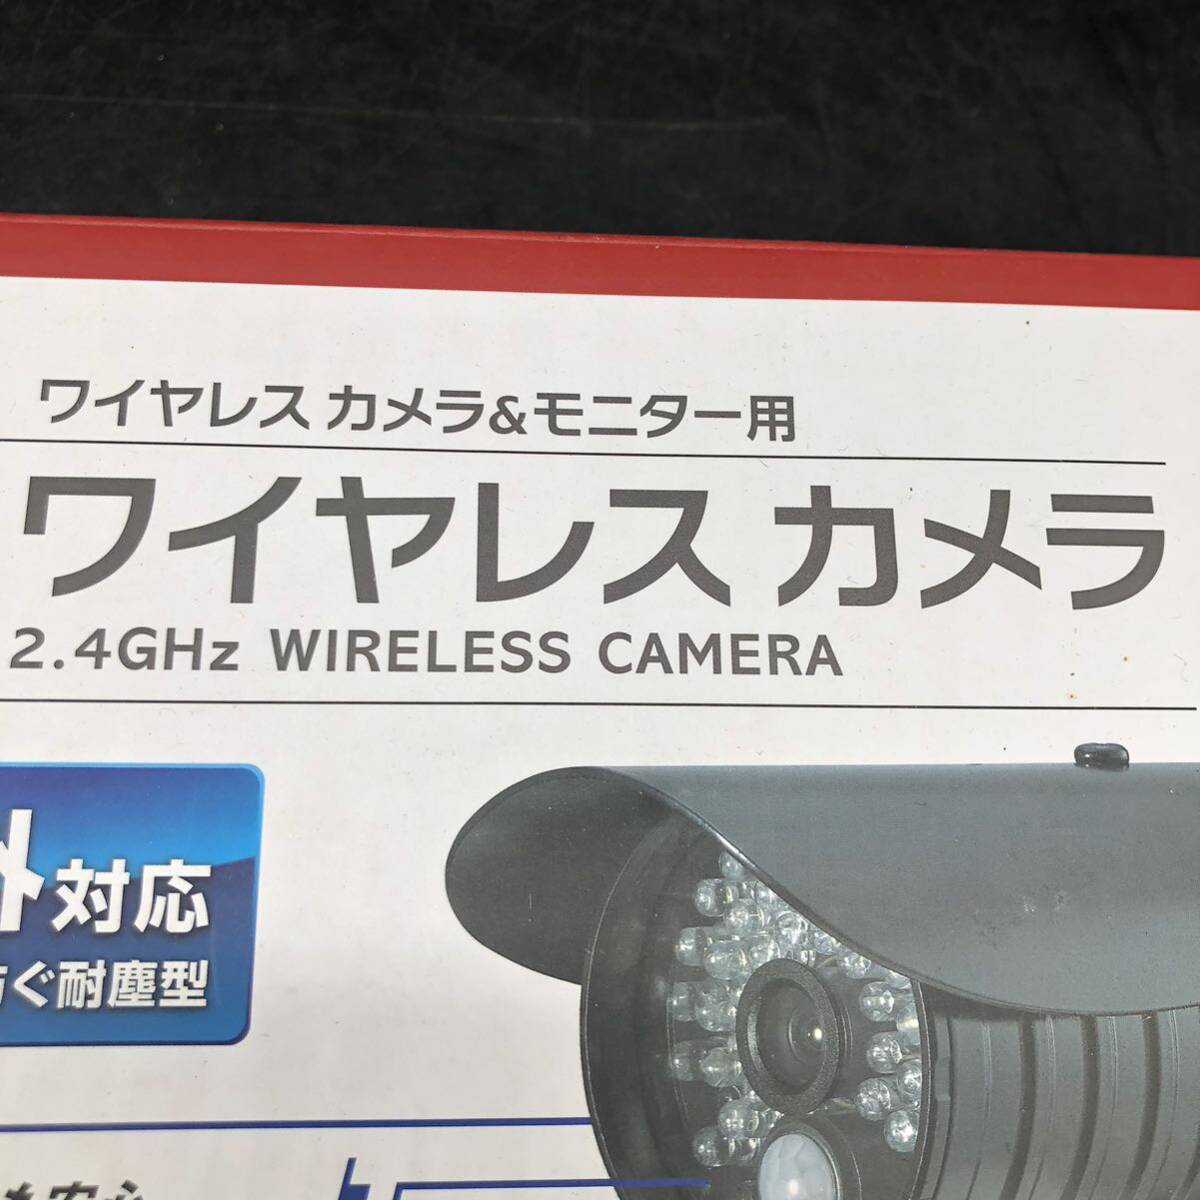 671 ELPA расширение беспроводной камера CMS-C71 камера камера системы безопасности 